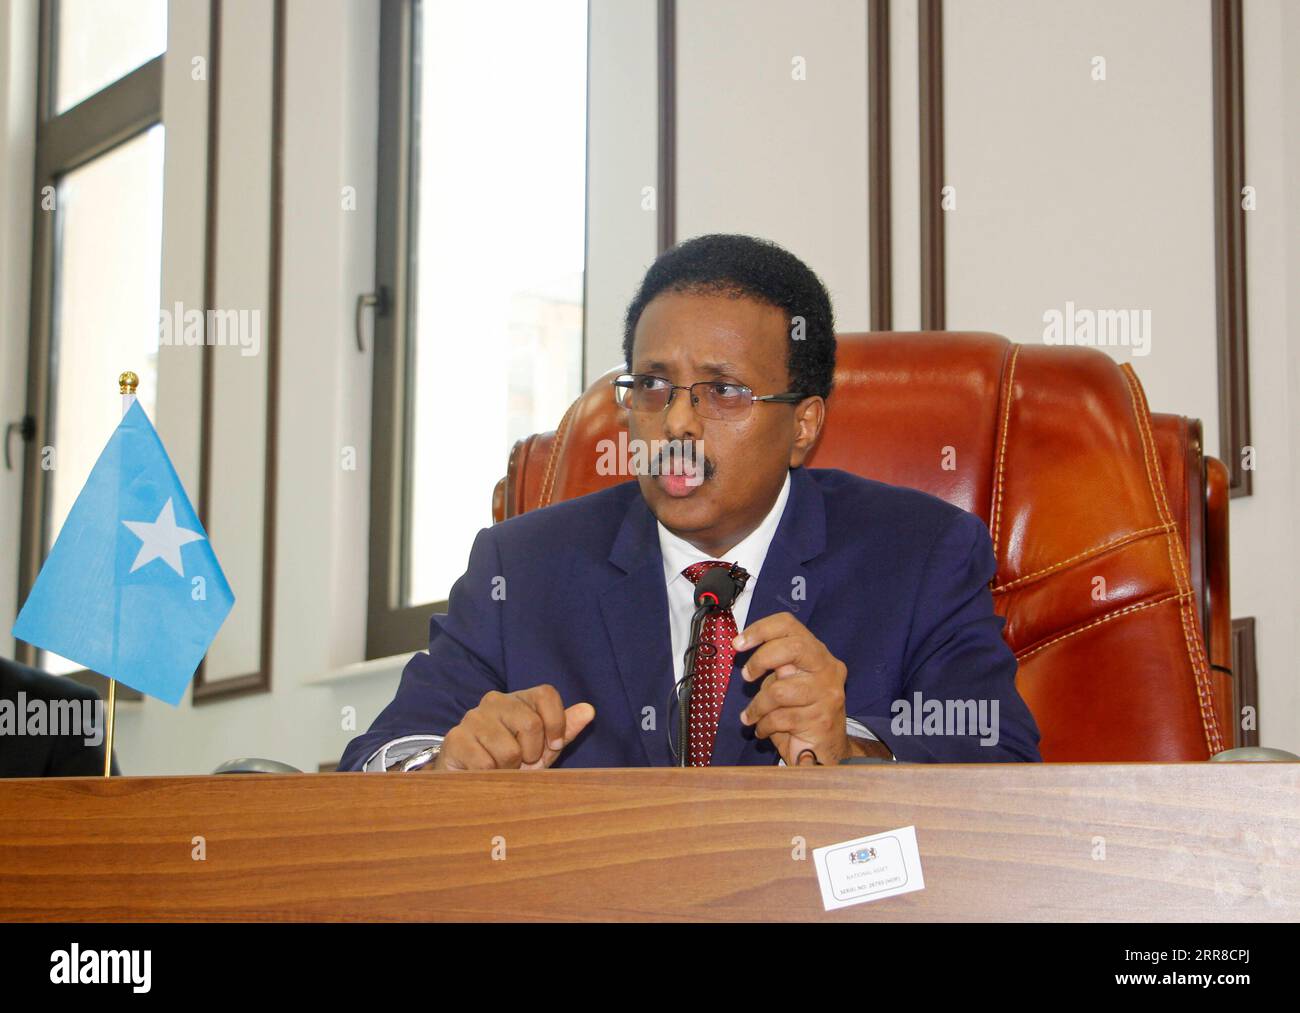 News Bilder des Tages 210501 -- MOGADISCIO, 1 de mayo de 2021 -- El presidente somalí Mohamed Farmajo se dirige al parlamento en Mogadiscio, Somalia, el 1 de mayo de 2021. El parlamento somalí votó el sábado para anular el proyecto de ley de extensión del mandato del 12 de abril, que extendió los términos de los brazos ejecutivos y legislativos del gobierno federal por dos años. Foto por /Xinhua SOMALIA-MOGADISHU-PRESIDENTE-PARLAMENTO DISCURSO HassanxBashi PUBLICATIONxNOTxINxCHN Foto de stock